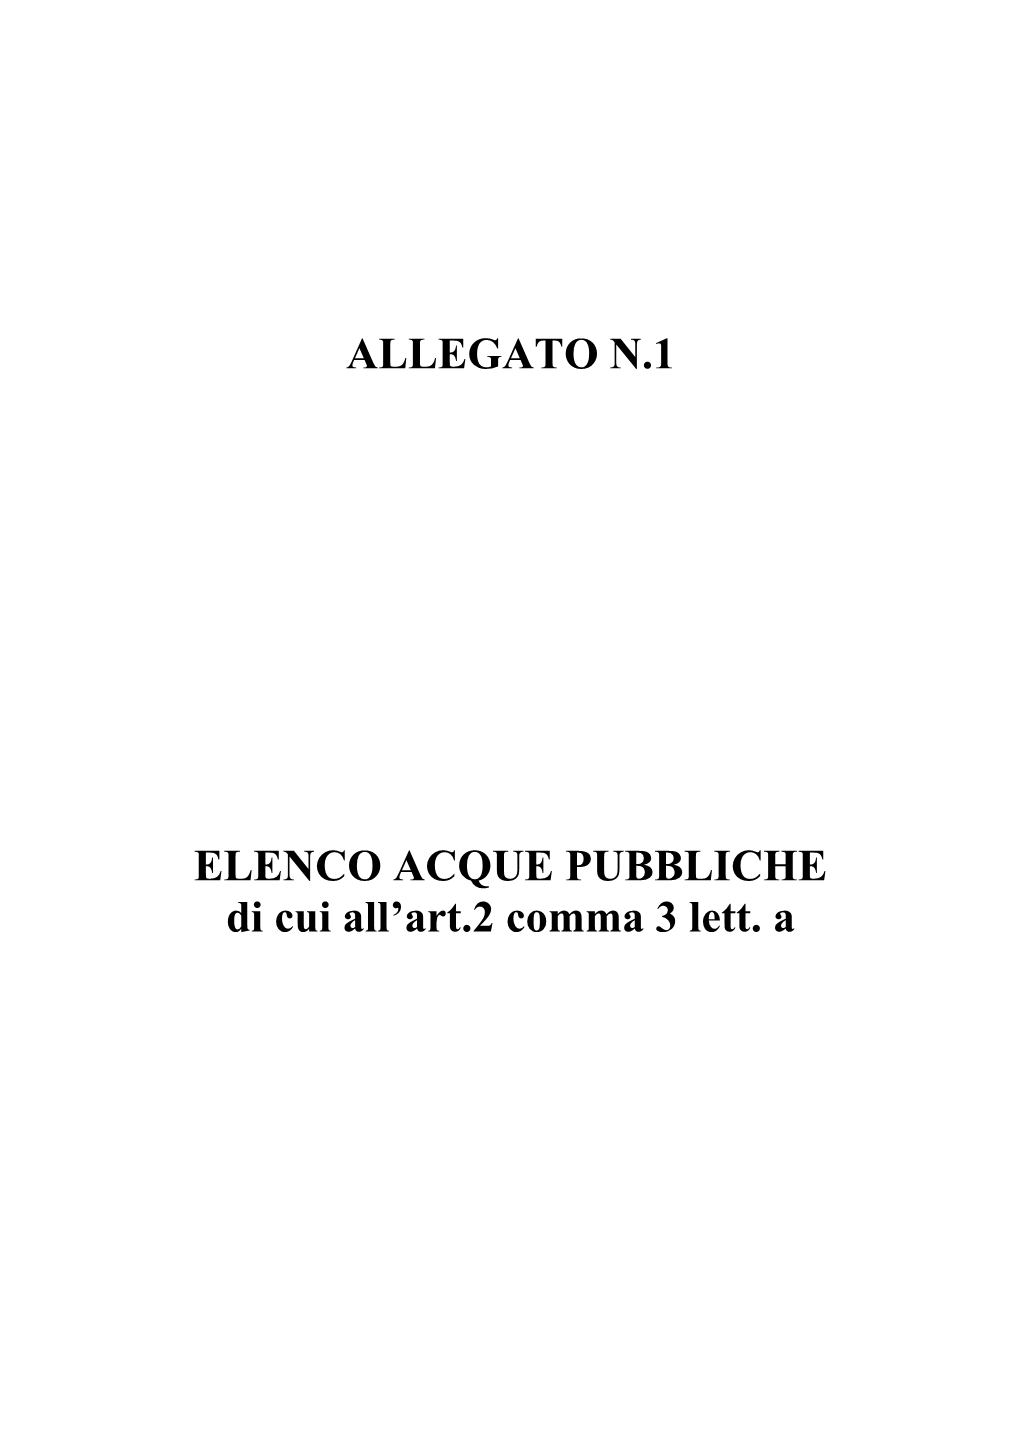 ALLEGATO N.1 ELENCO ACQUE PUBBLICHE Di Cui All'art.2 Comma